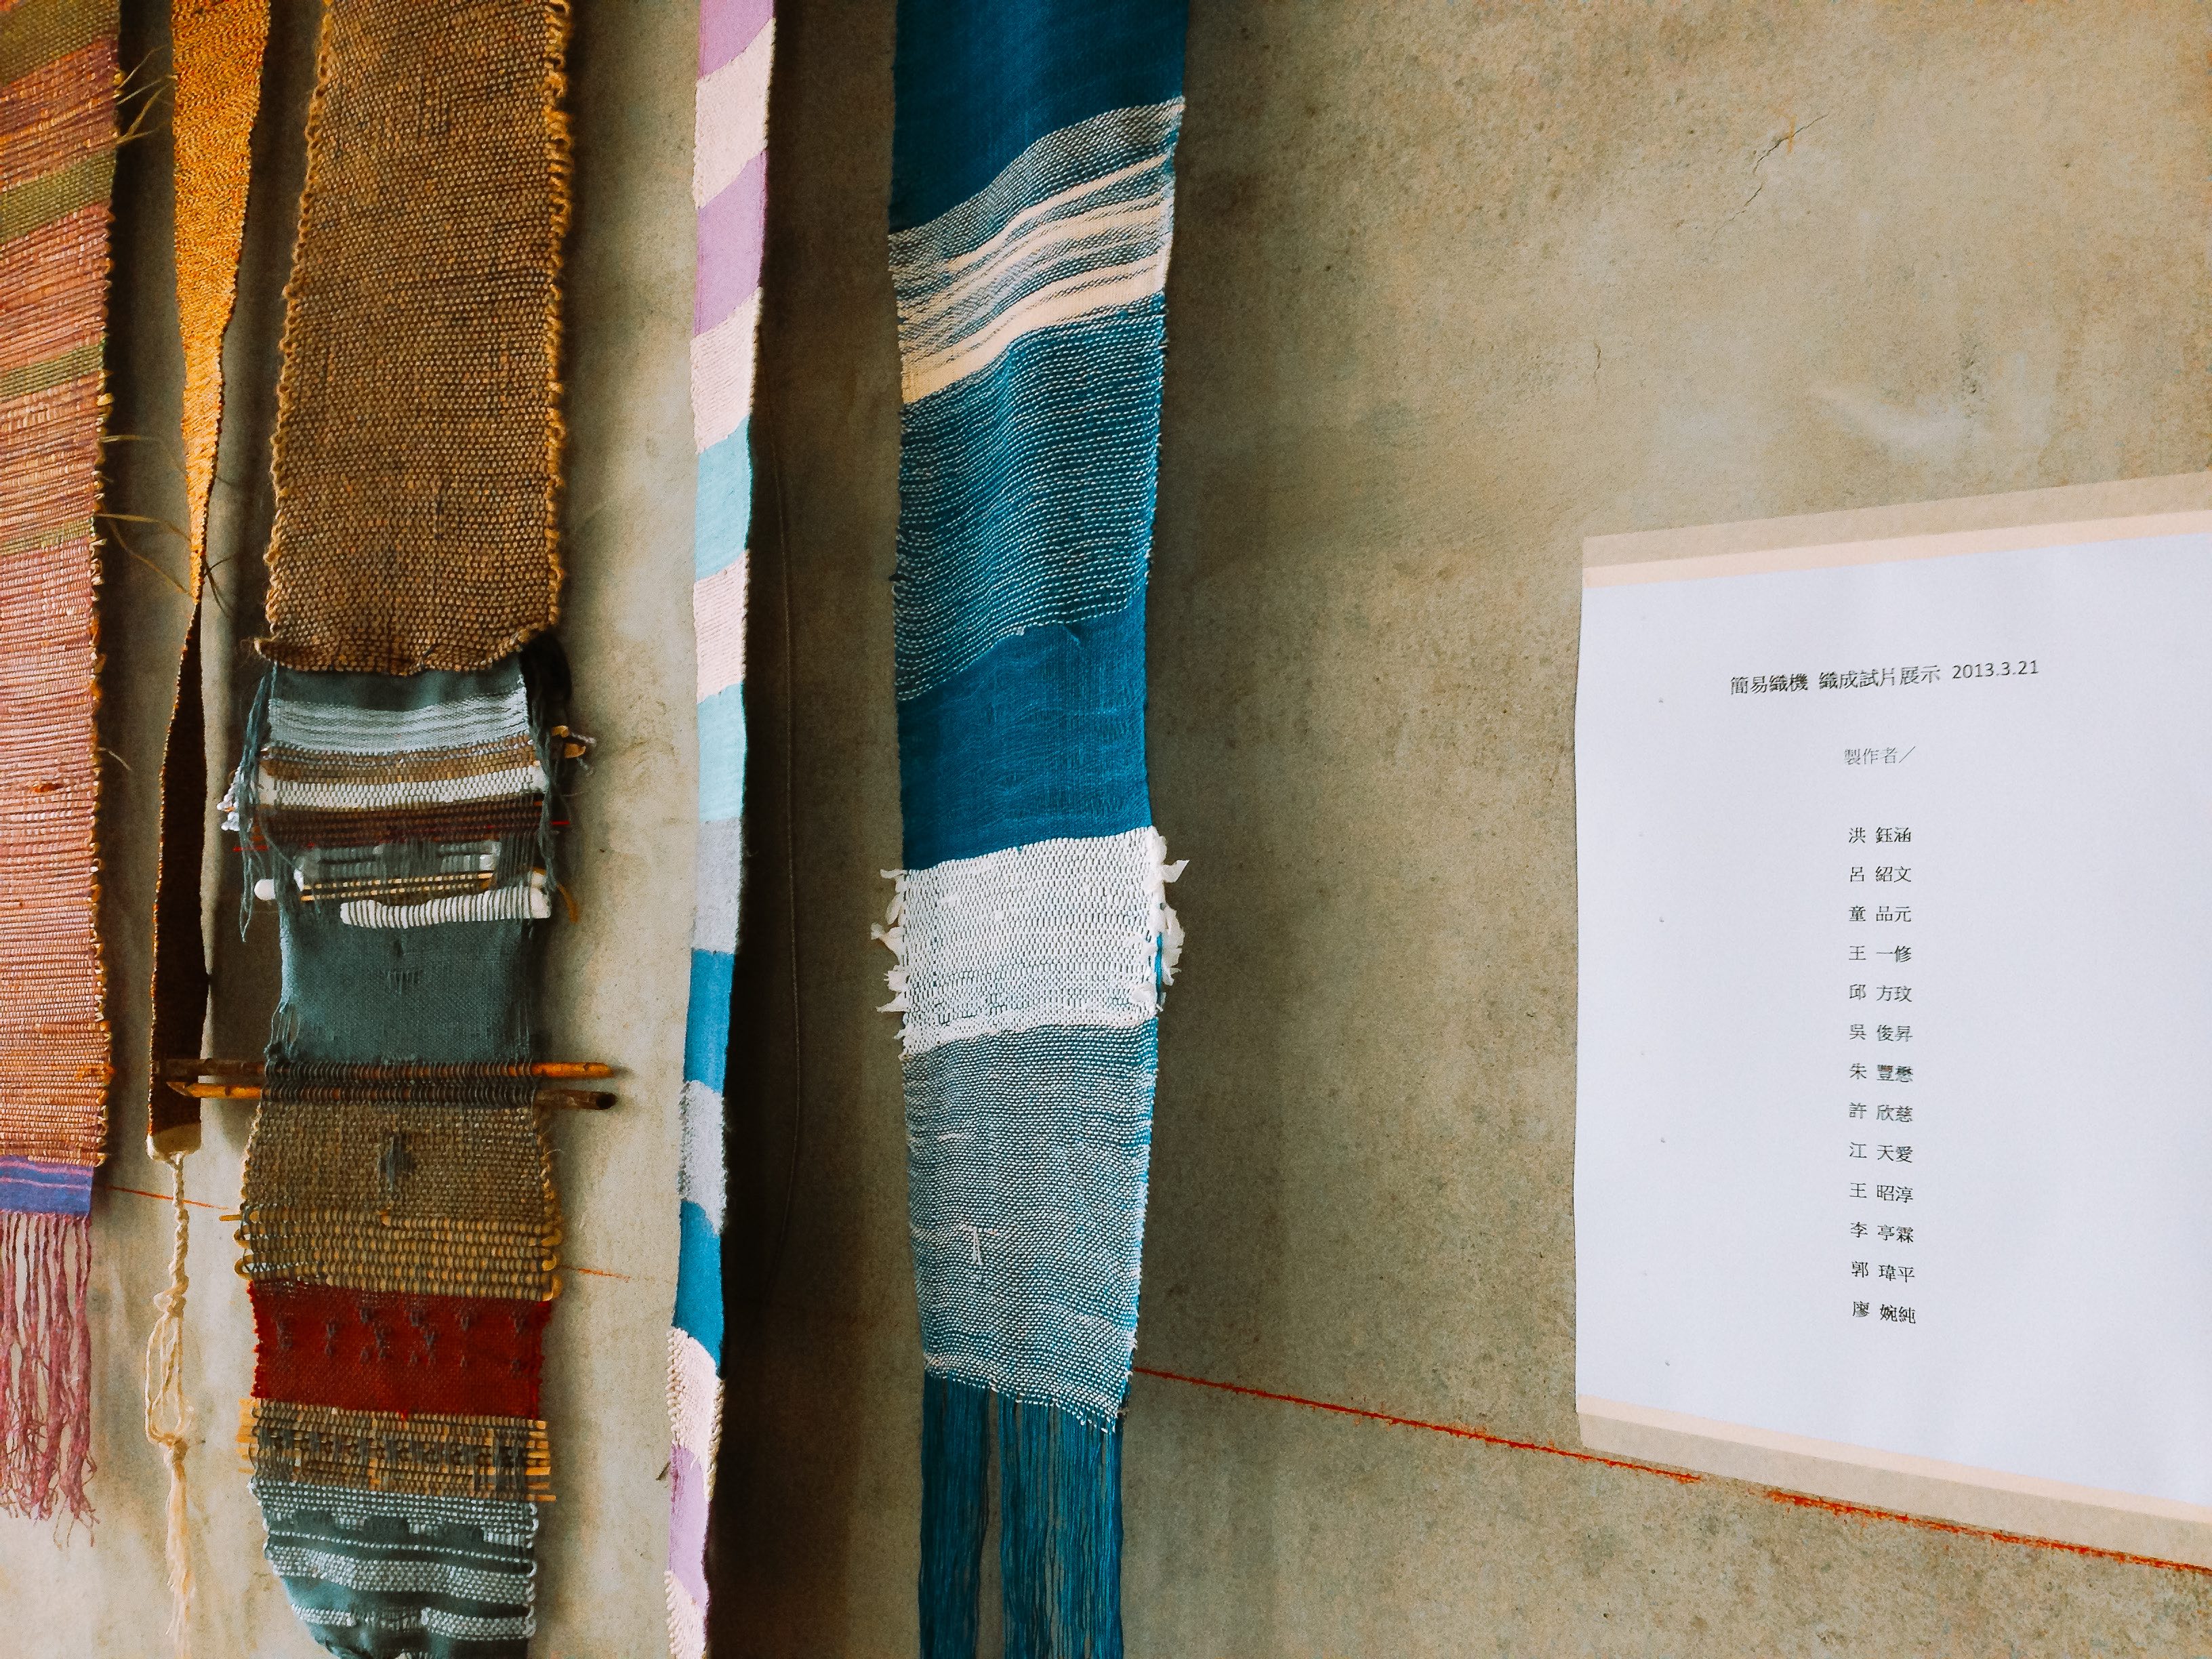 國立臺南藝術大學材質創作與設計系學生在織品展覽上展出的織品作品